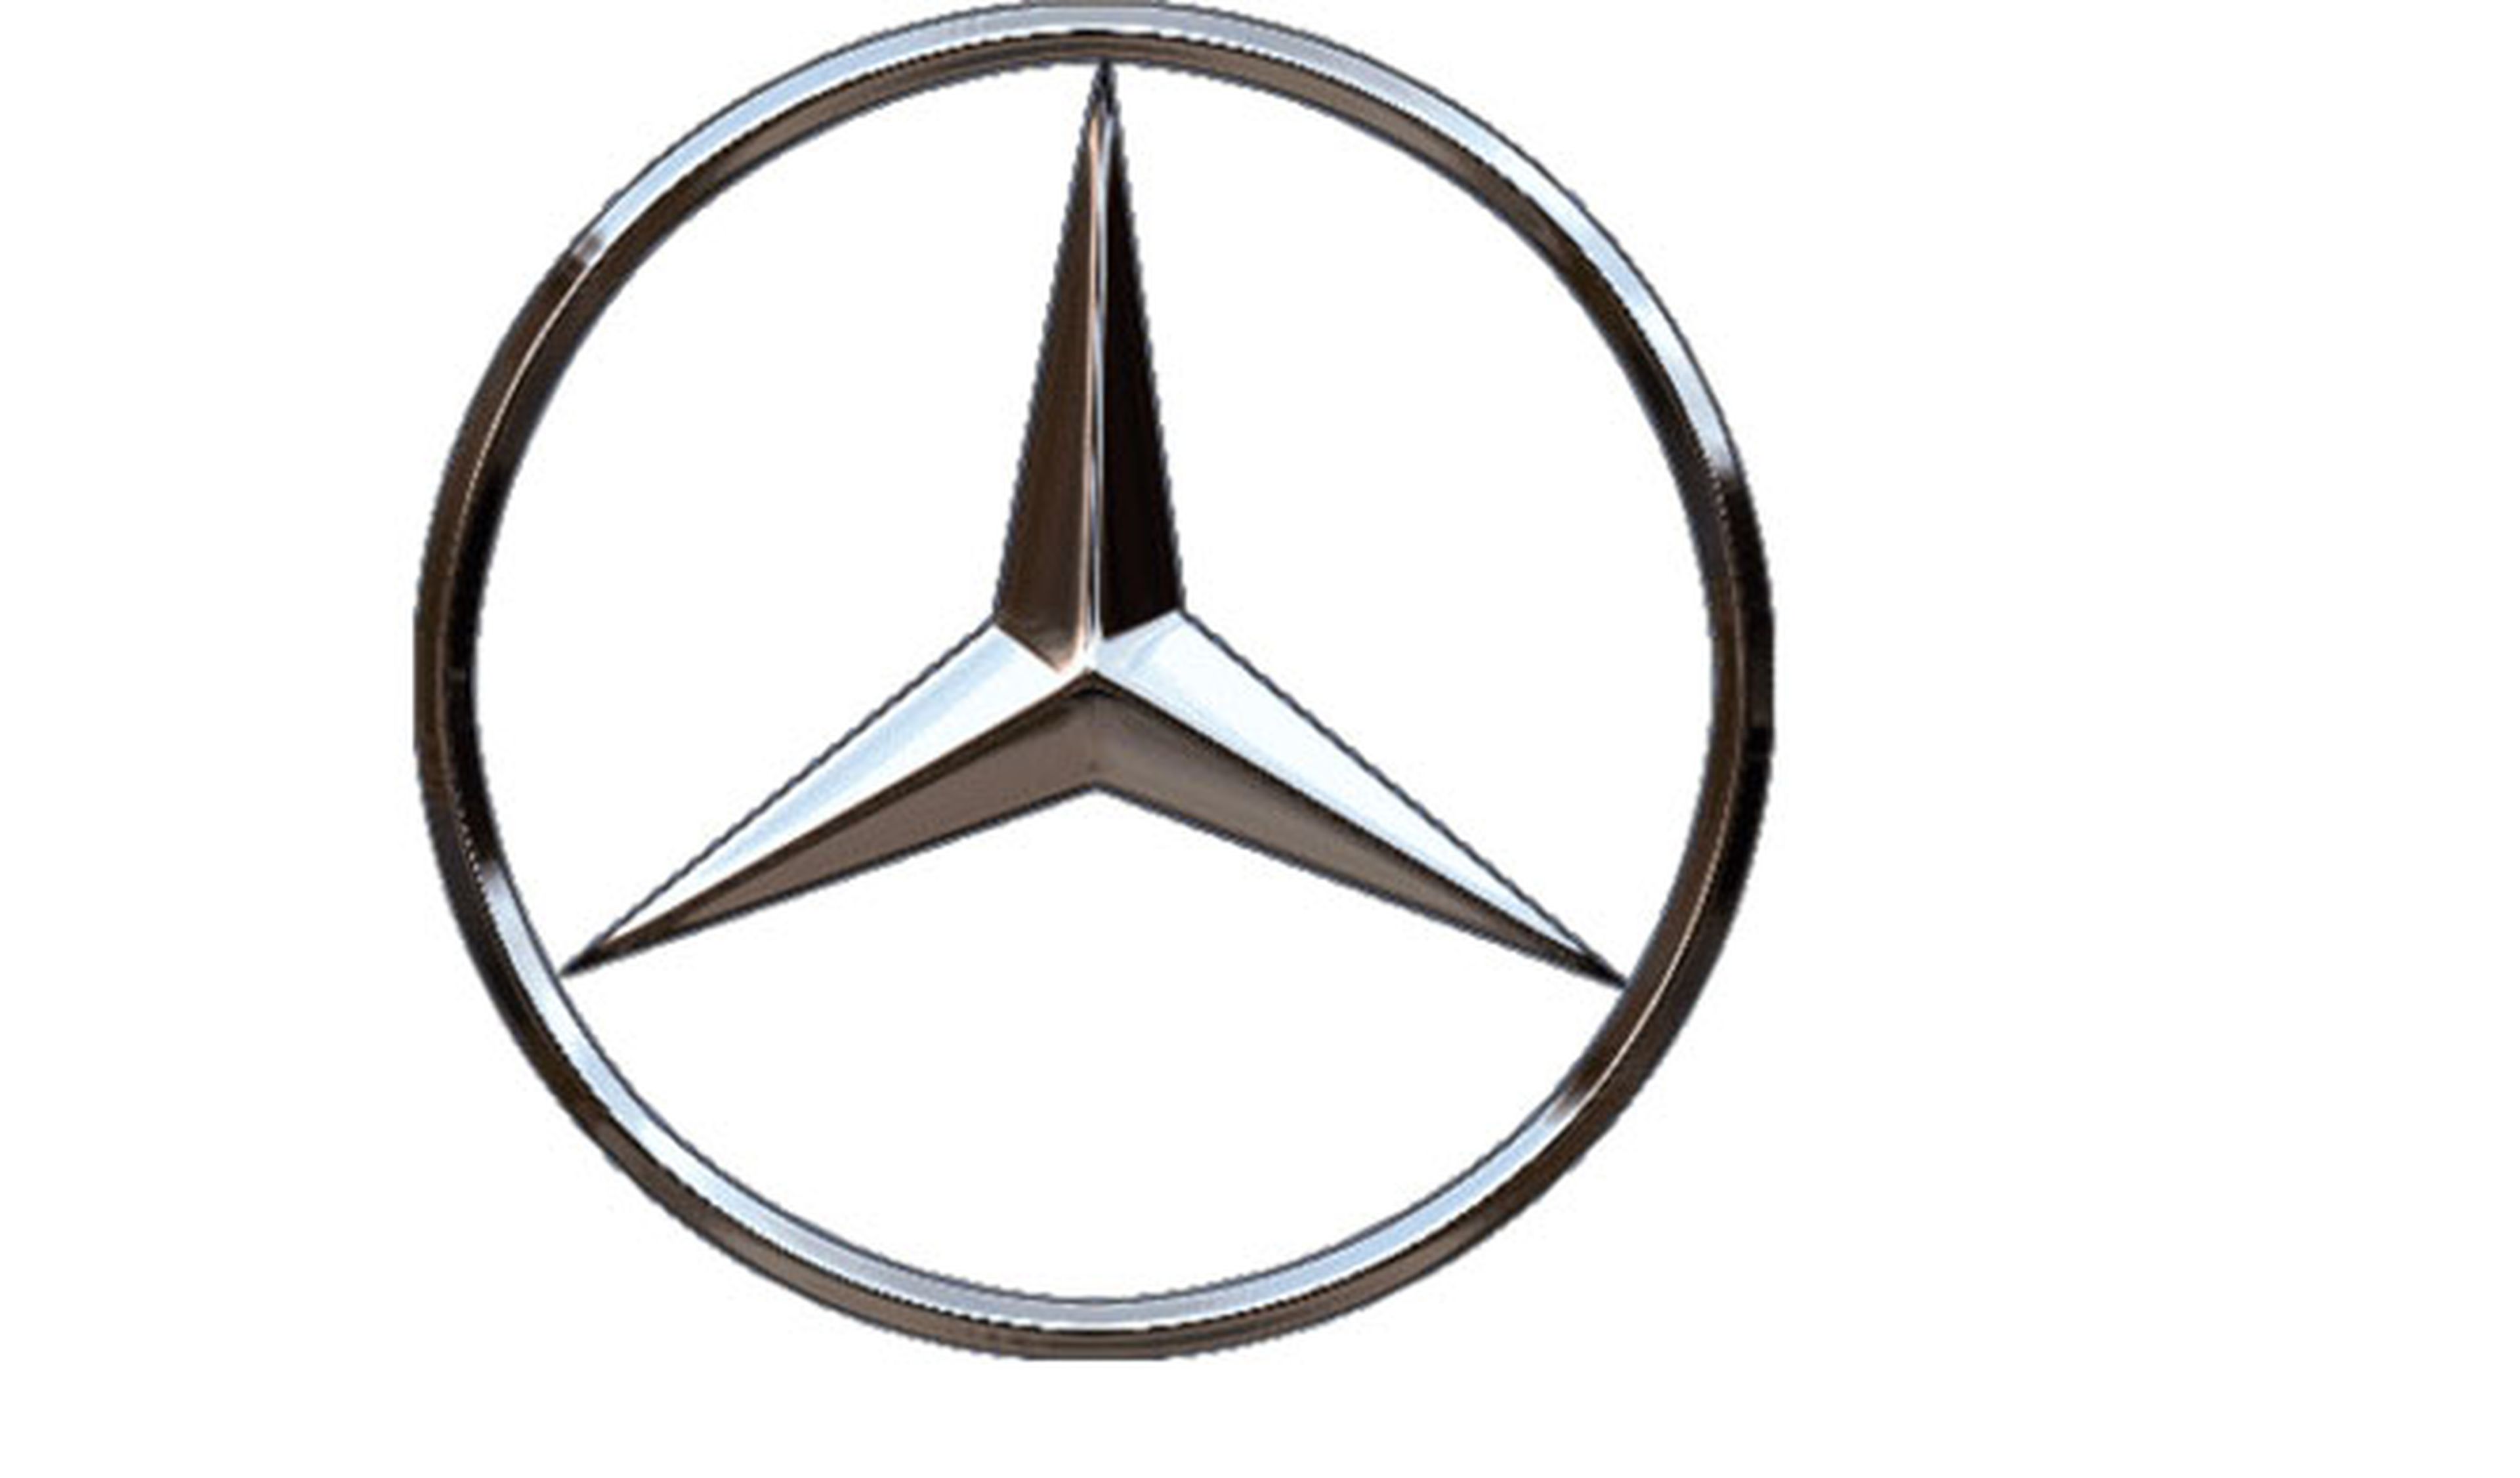 ¿Sabrías decir qué Mercedes es este?